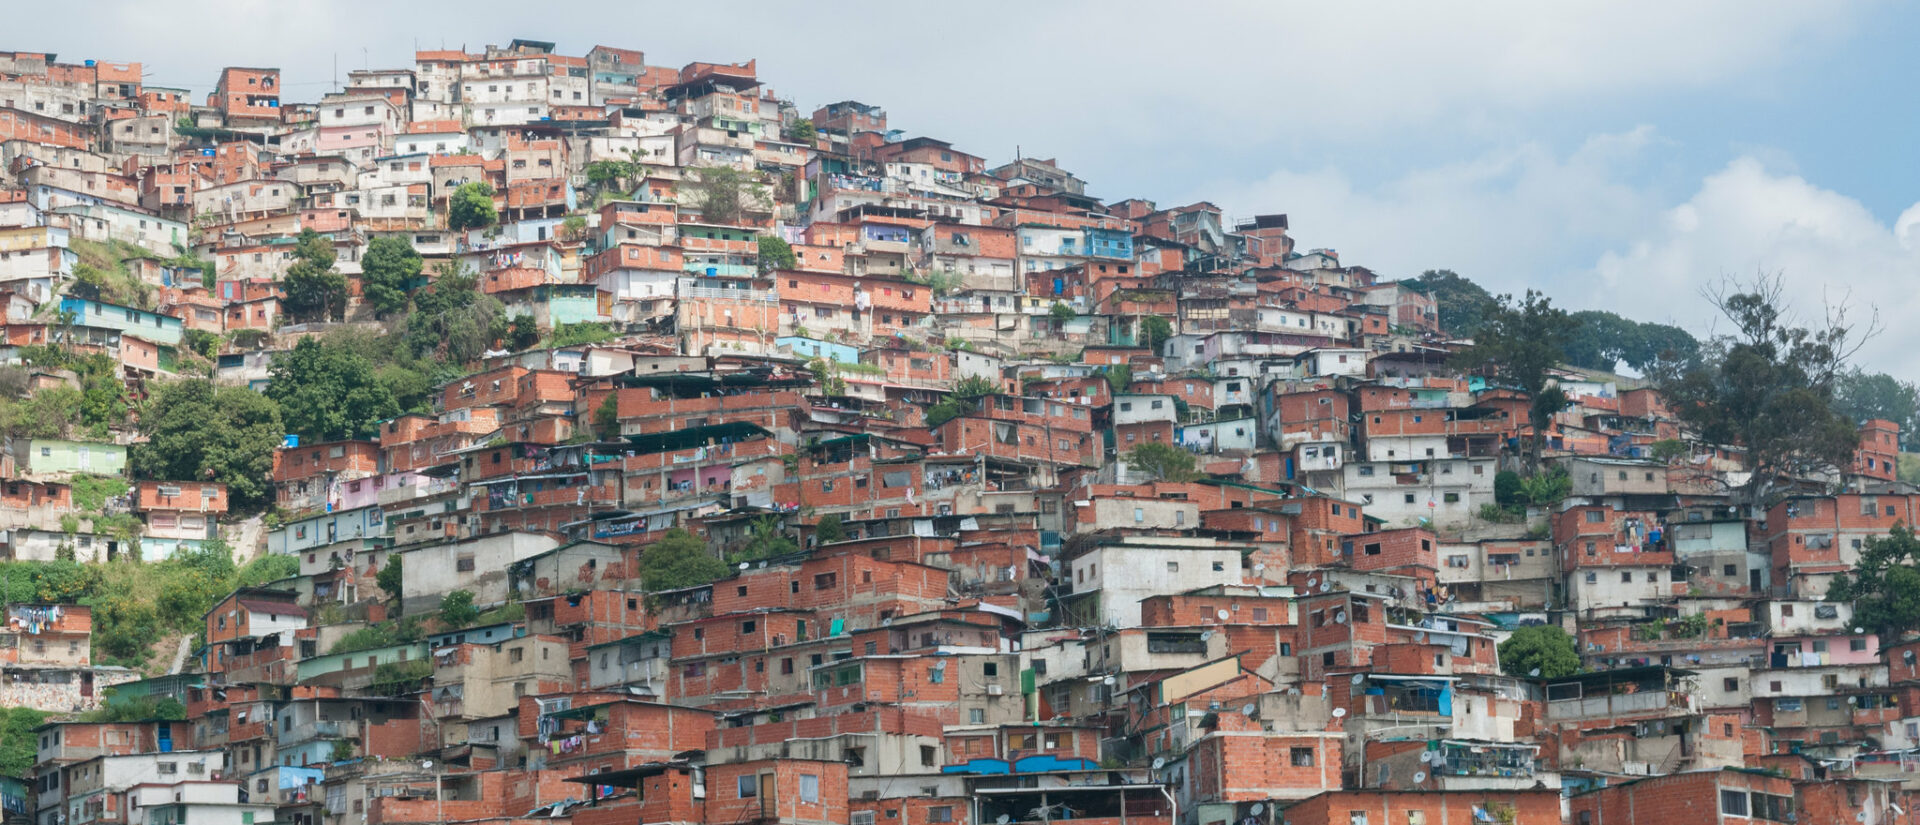 Le diocèse de Petare, au Venezuela, abrite 760'000 habitants | © wilfredorrh/Flickr/CC BY-NC-ND 2.0